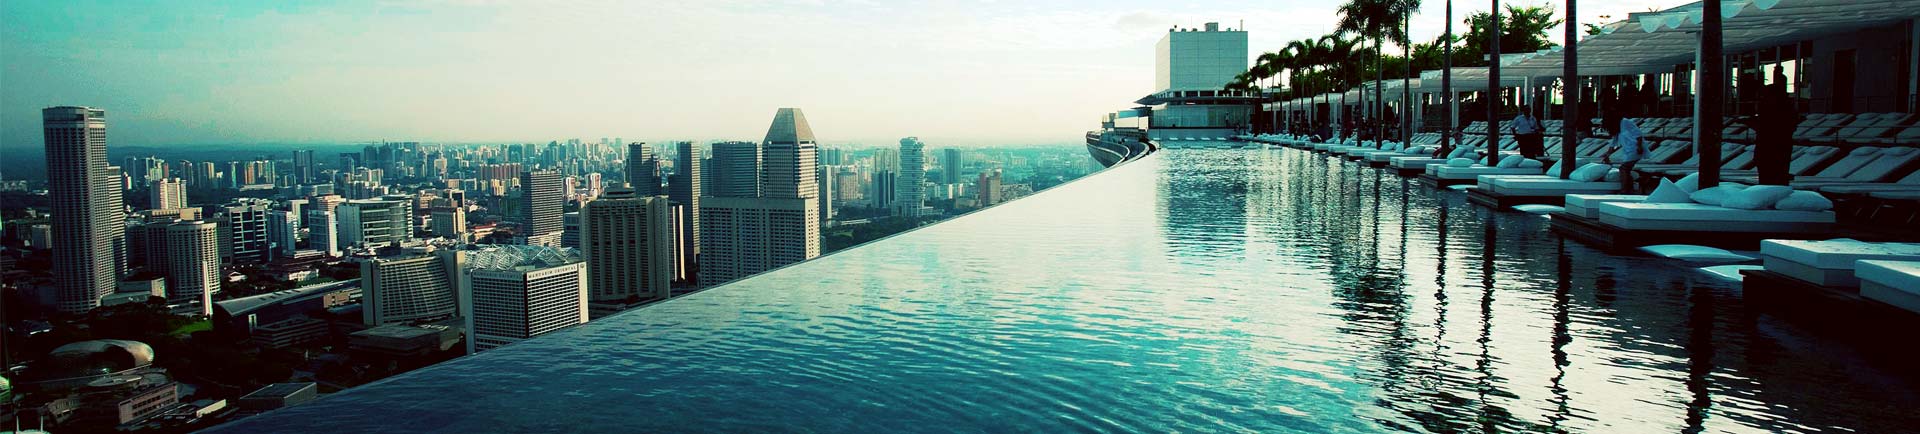 Außergewöhnliche Architektur: Marina Bay Sands Singapur